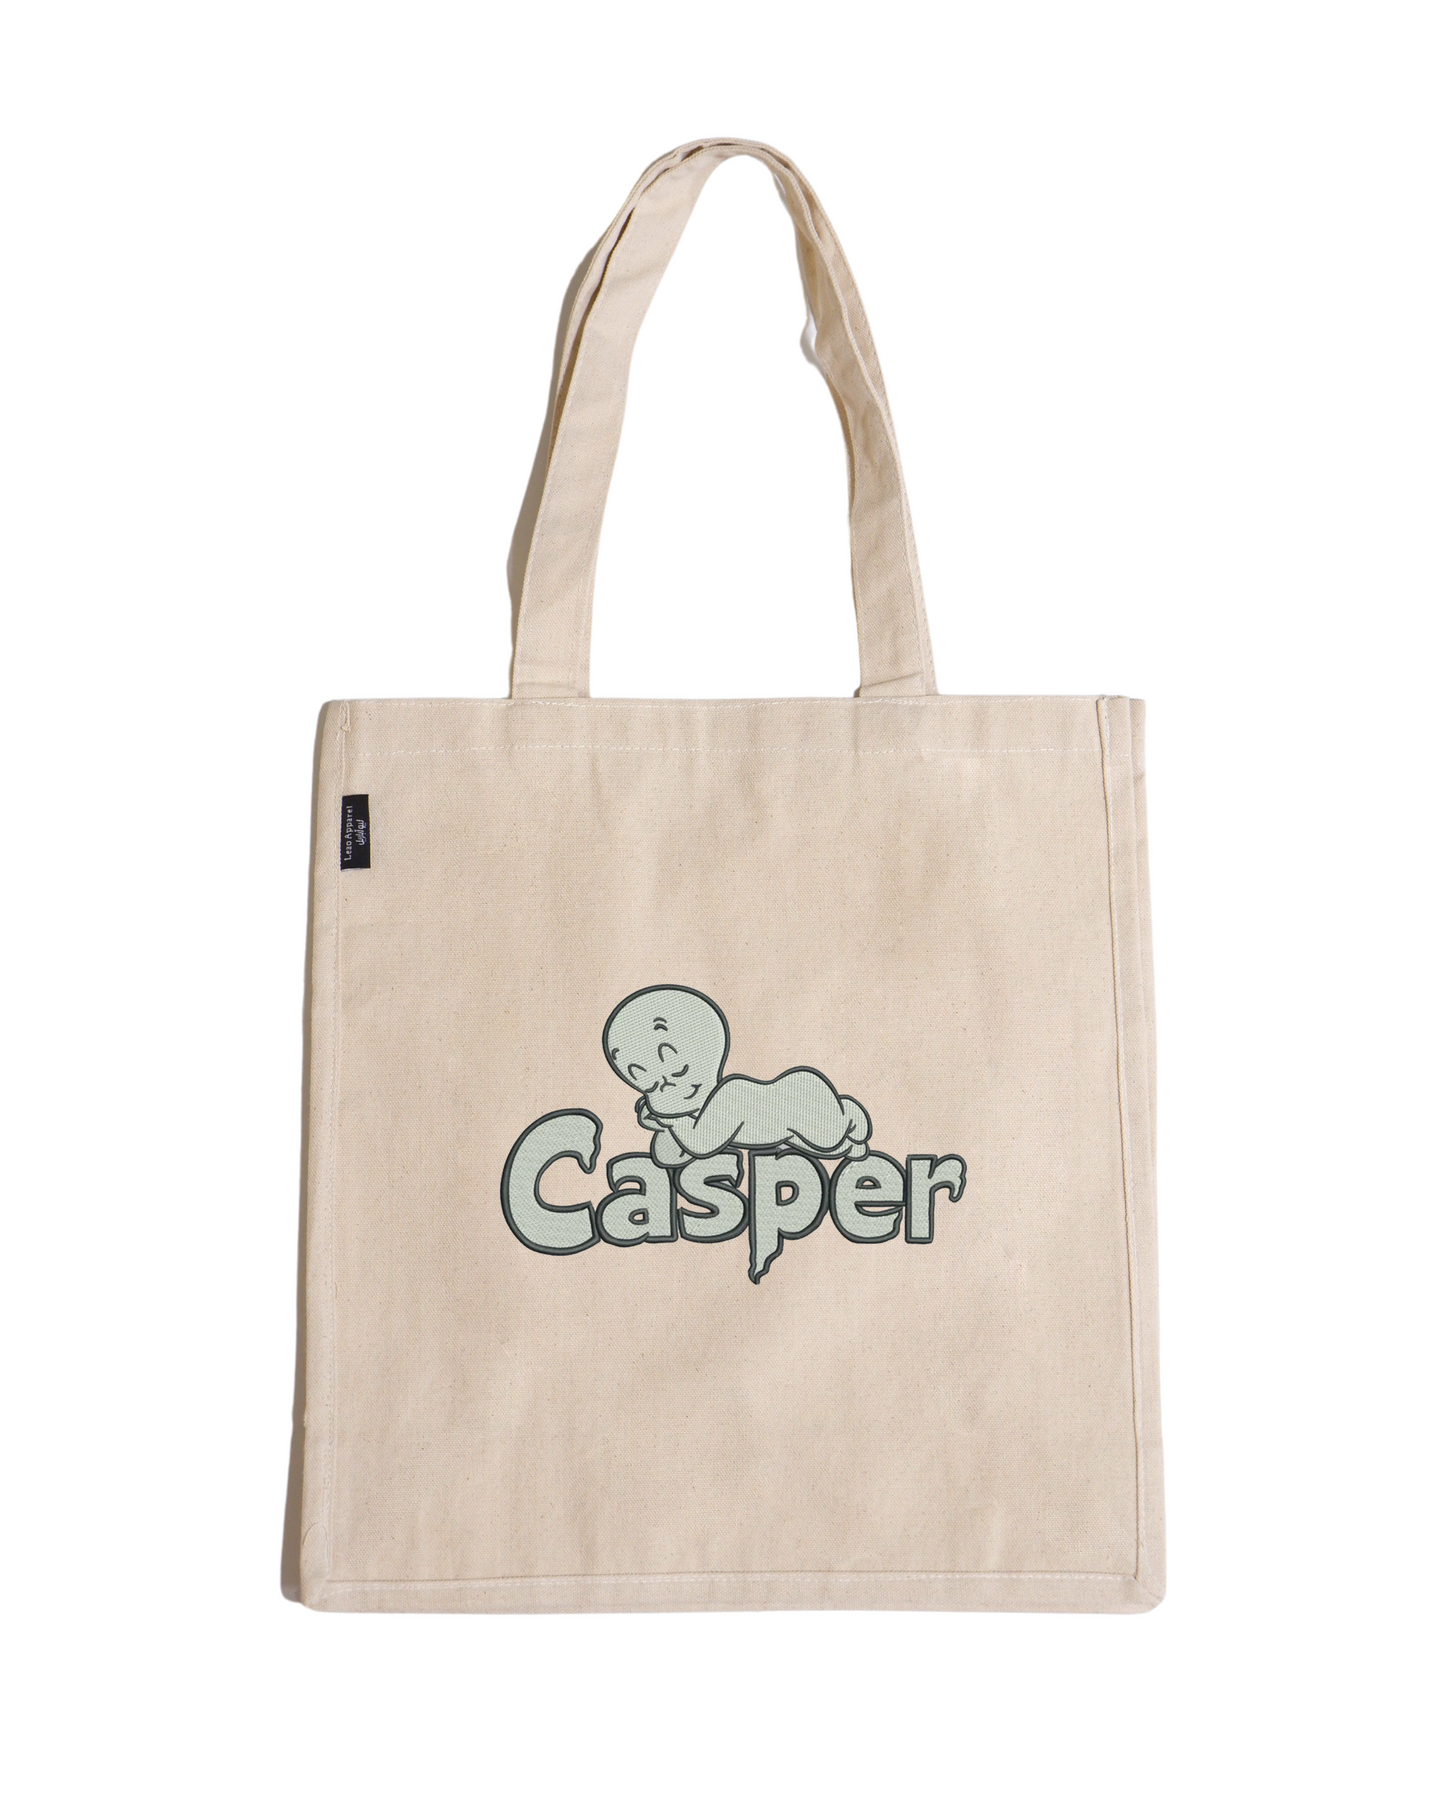 Casper Tote Bag